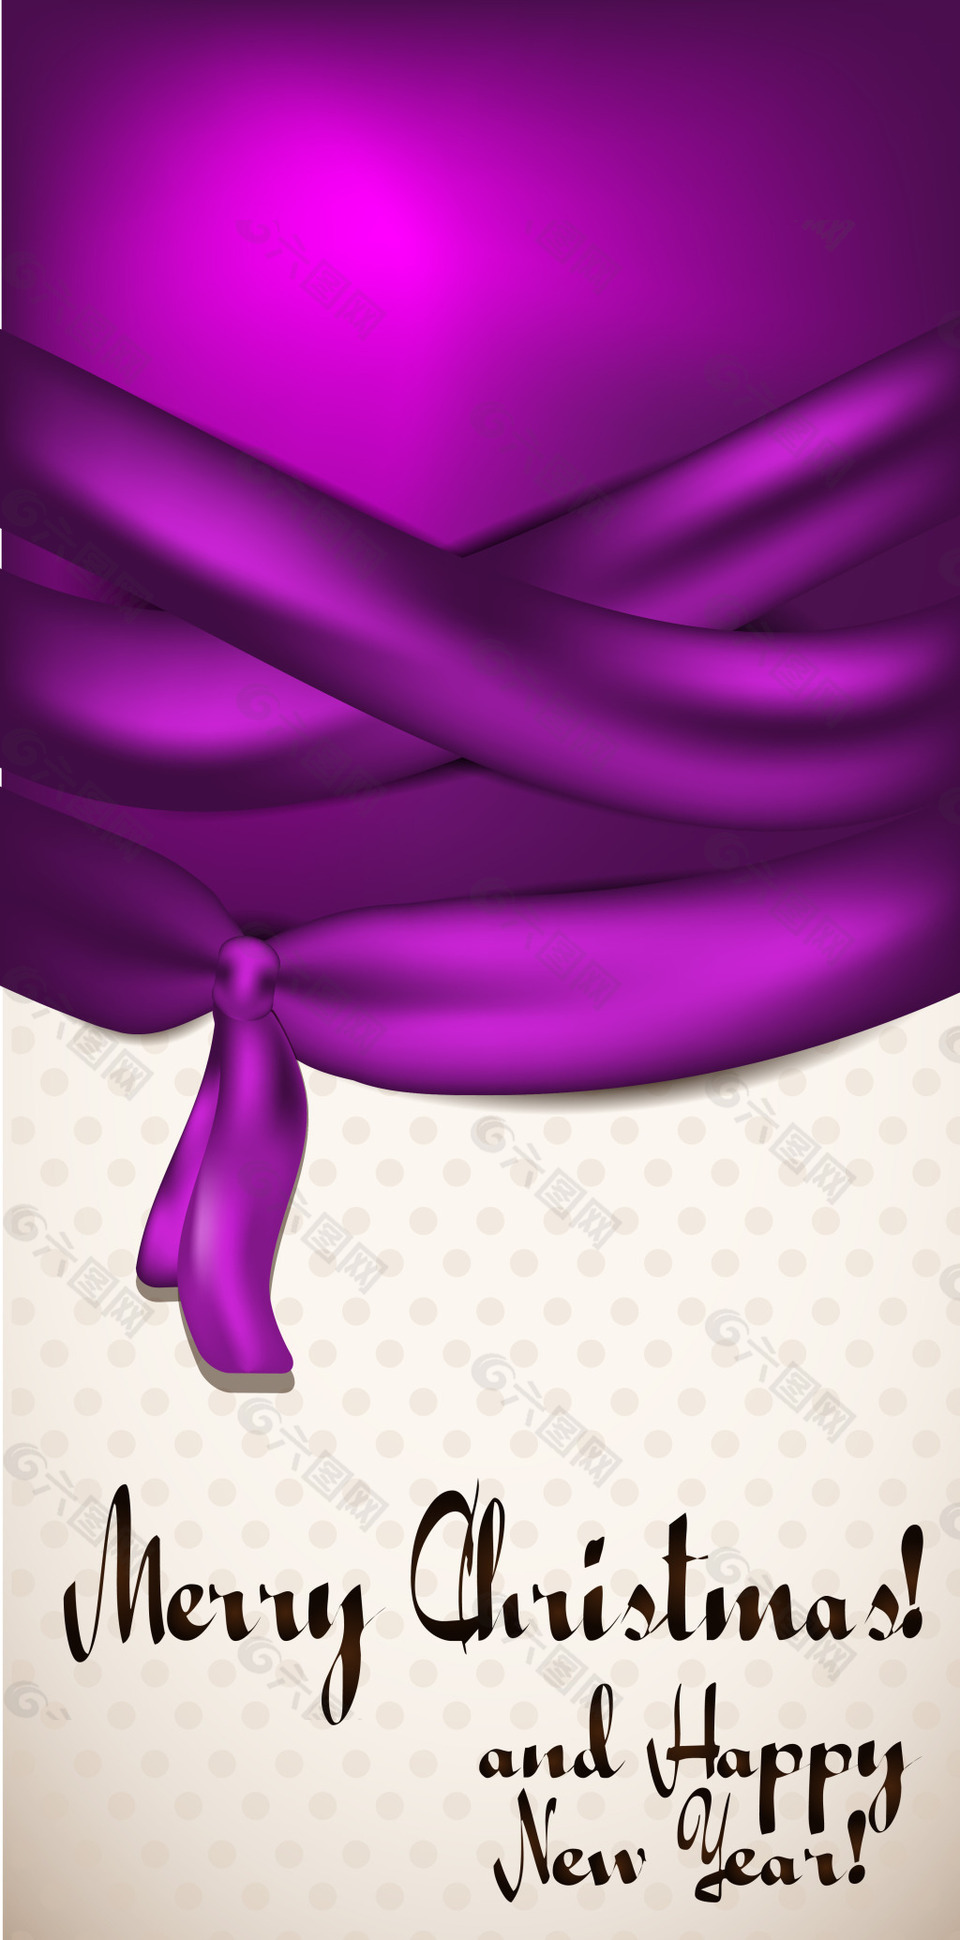 紫色丝带背景